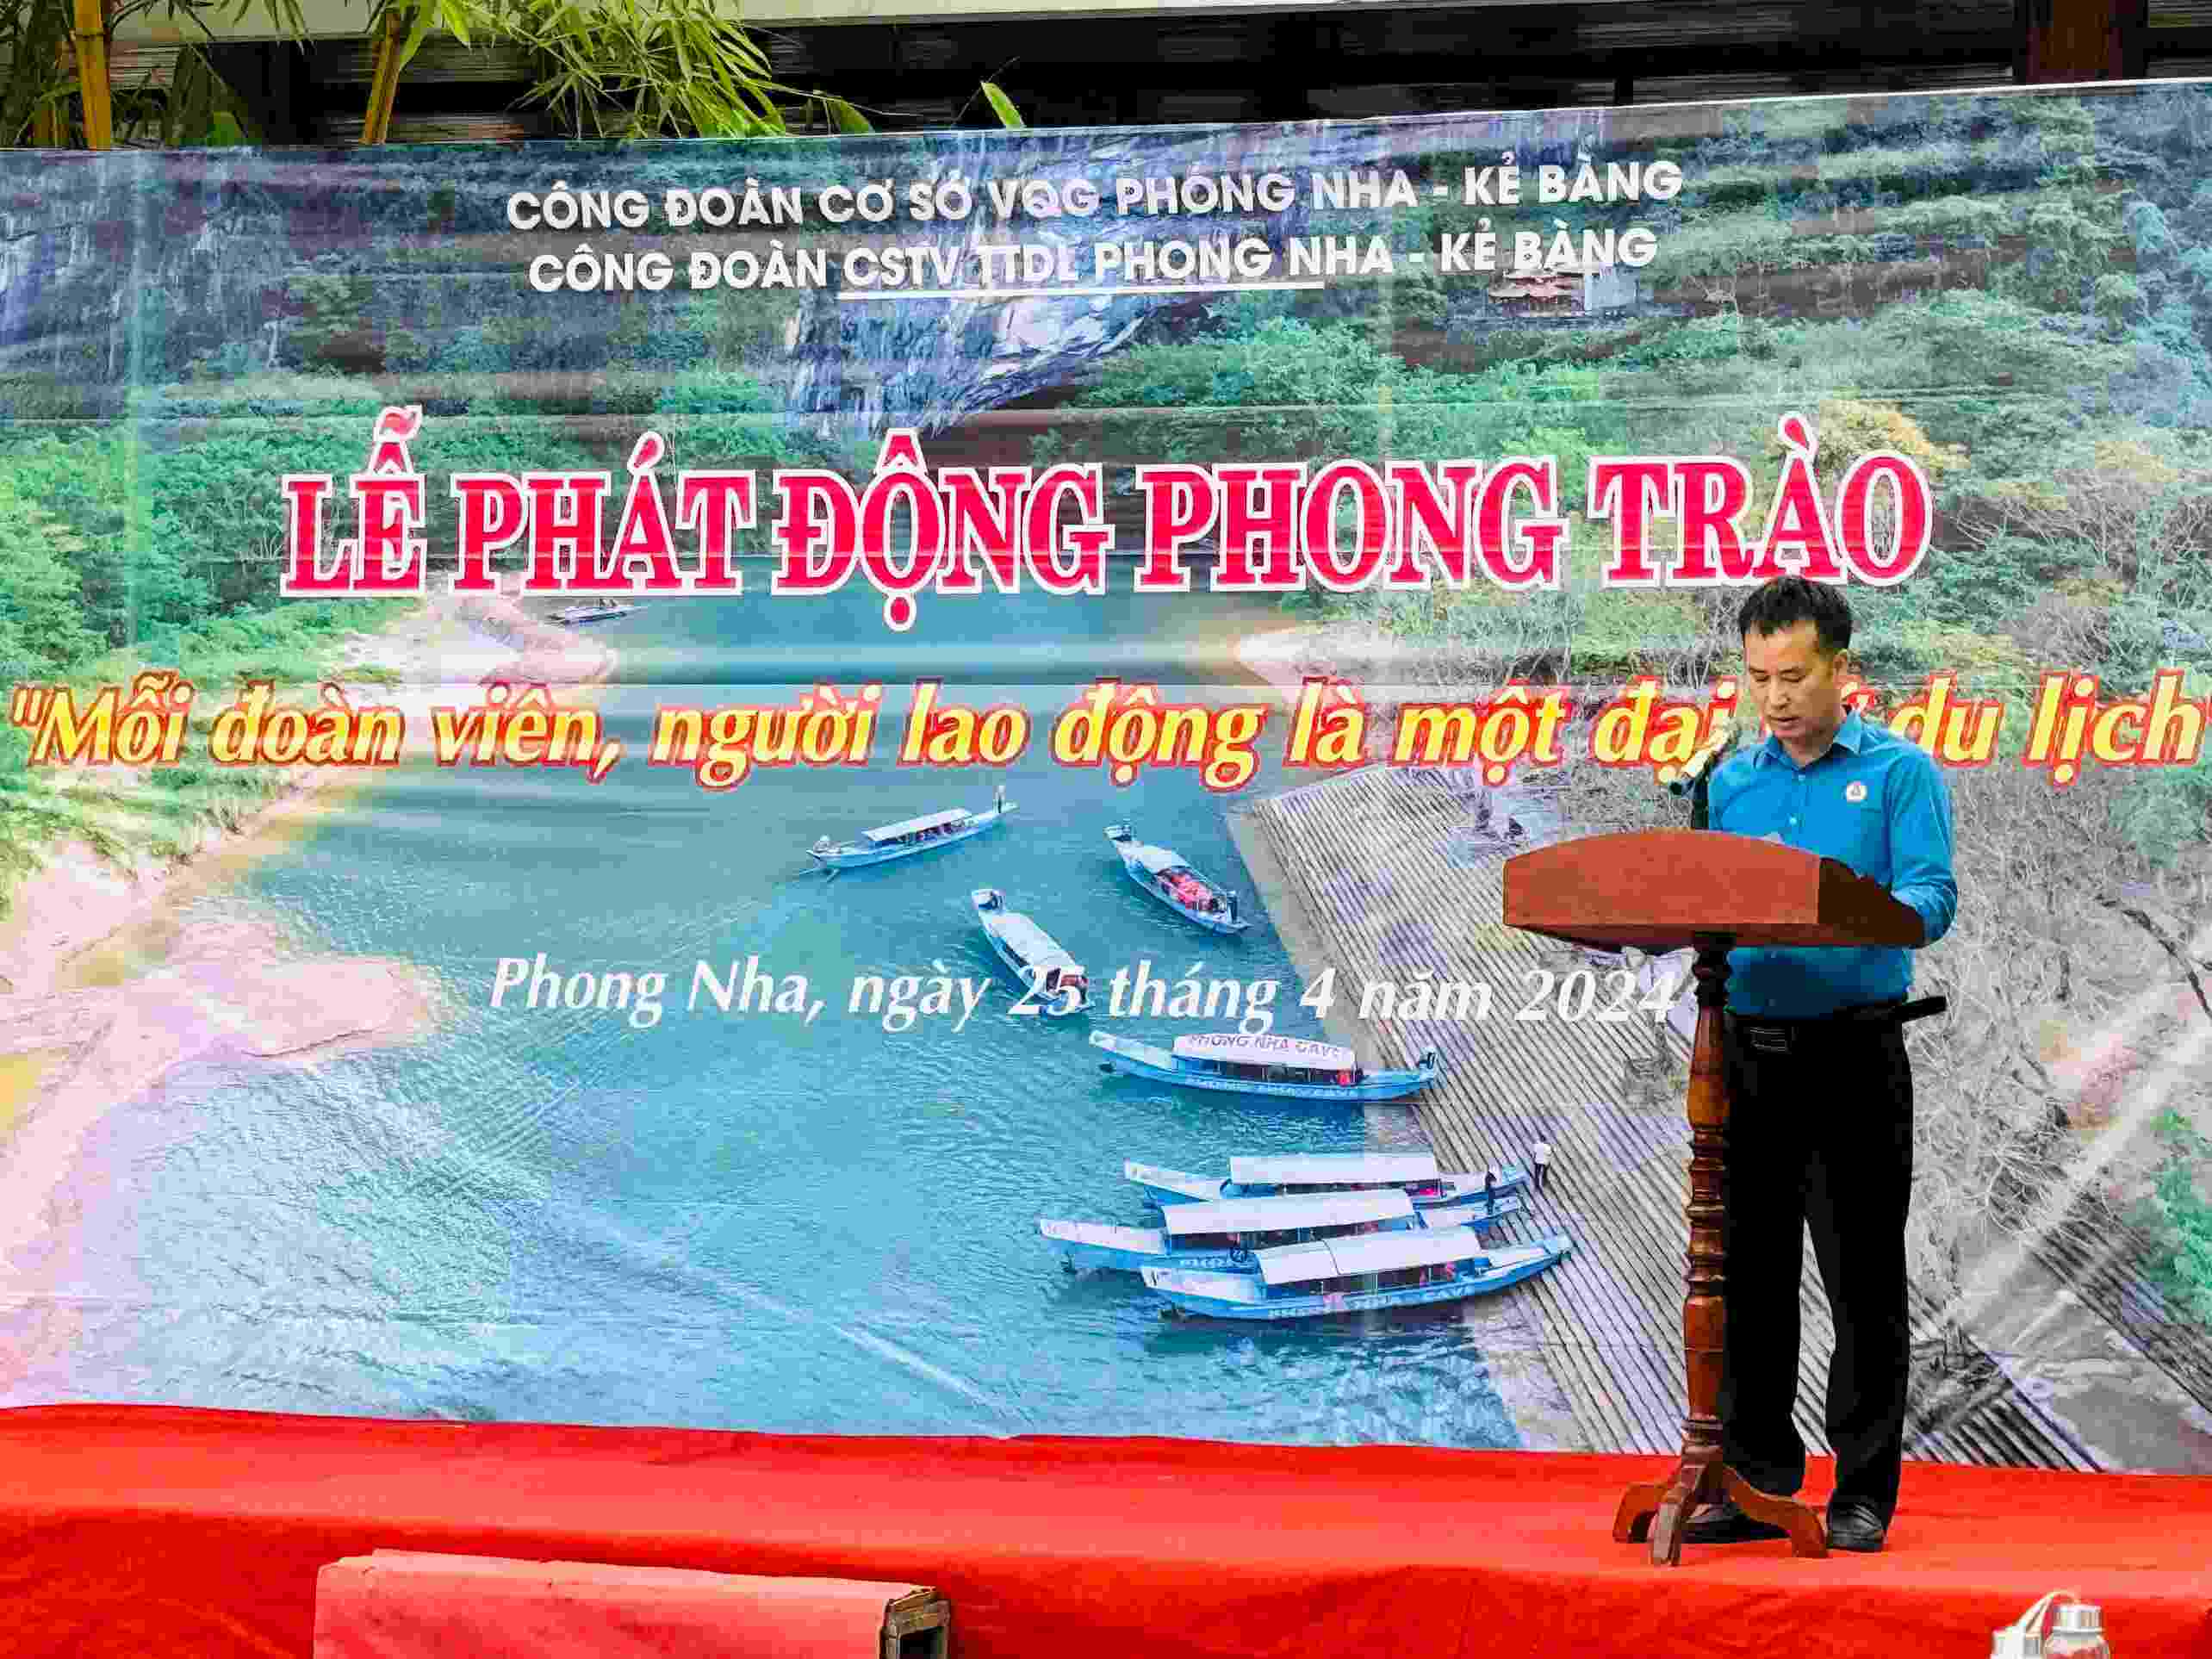 Ông Lê Chiêu Nguyên - Chủ tịch Công đoàn cơ sở thành viên Trung tâm Du lịch Phong Nha - Kẻ Bàng phát biểu tại buổi lễ. Ảnh: Trung tâm Phong Nha - Kẻ Bàng.